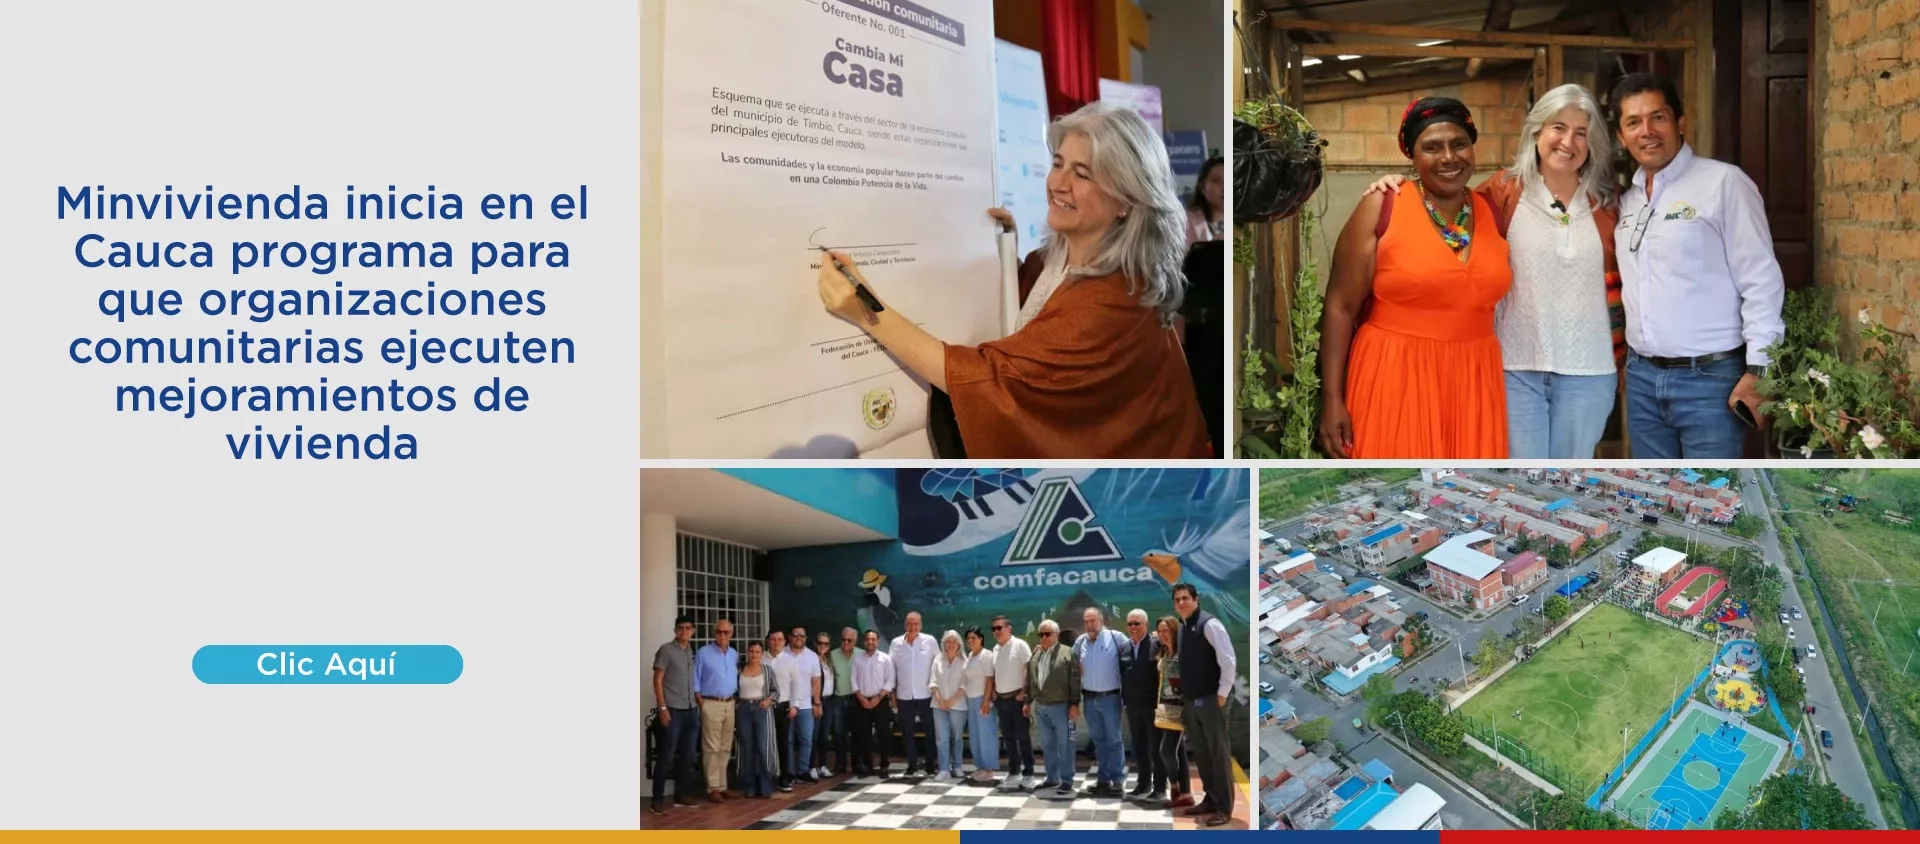 Minvivienda inicia en el Cauca programa para que organizaciones comunitarias ejecuten mejoramientos de vivienda